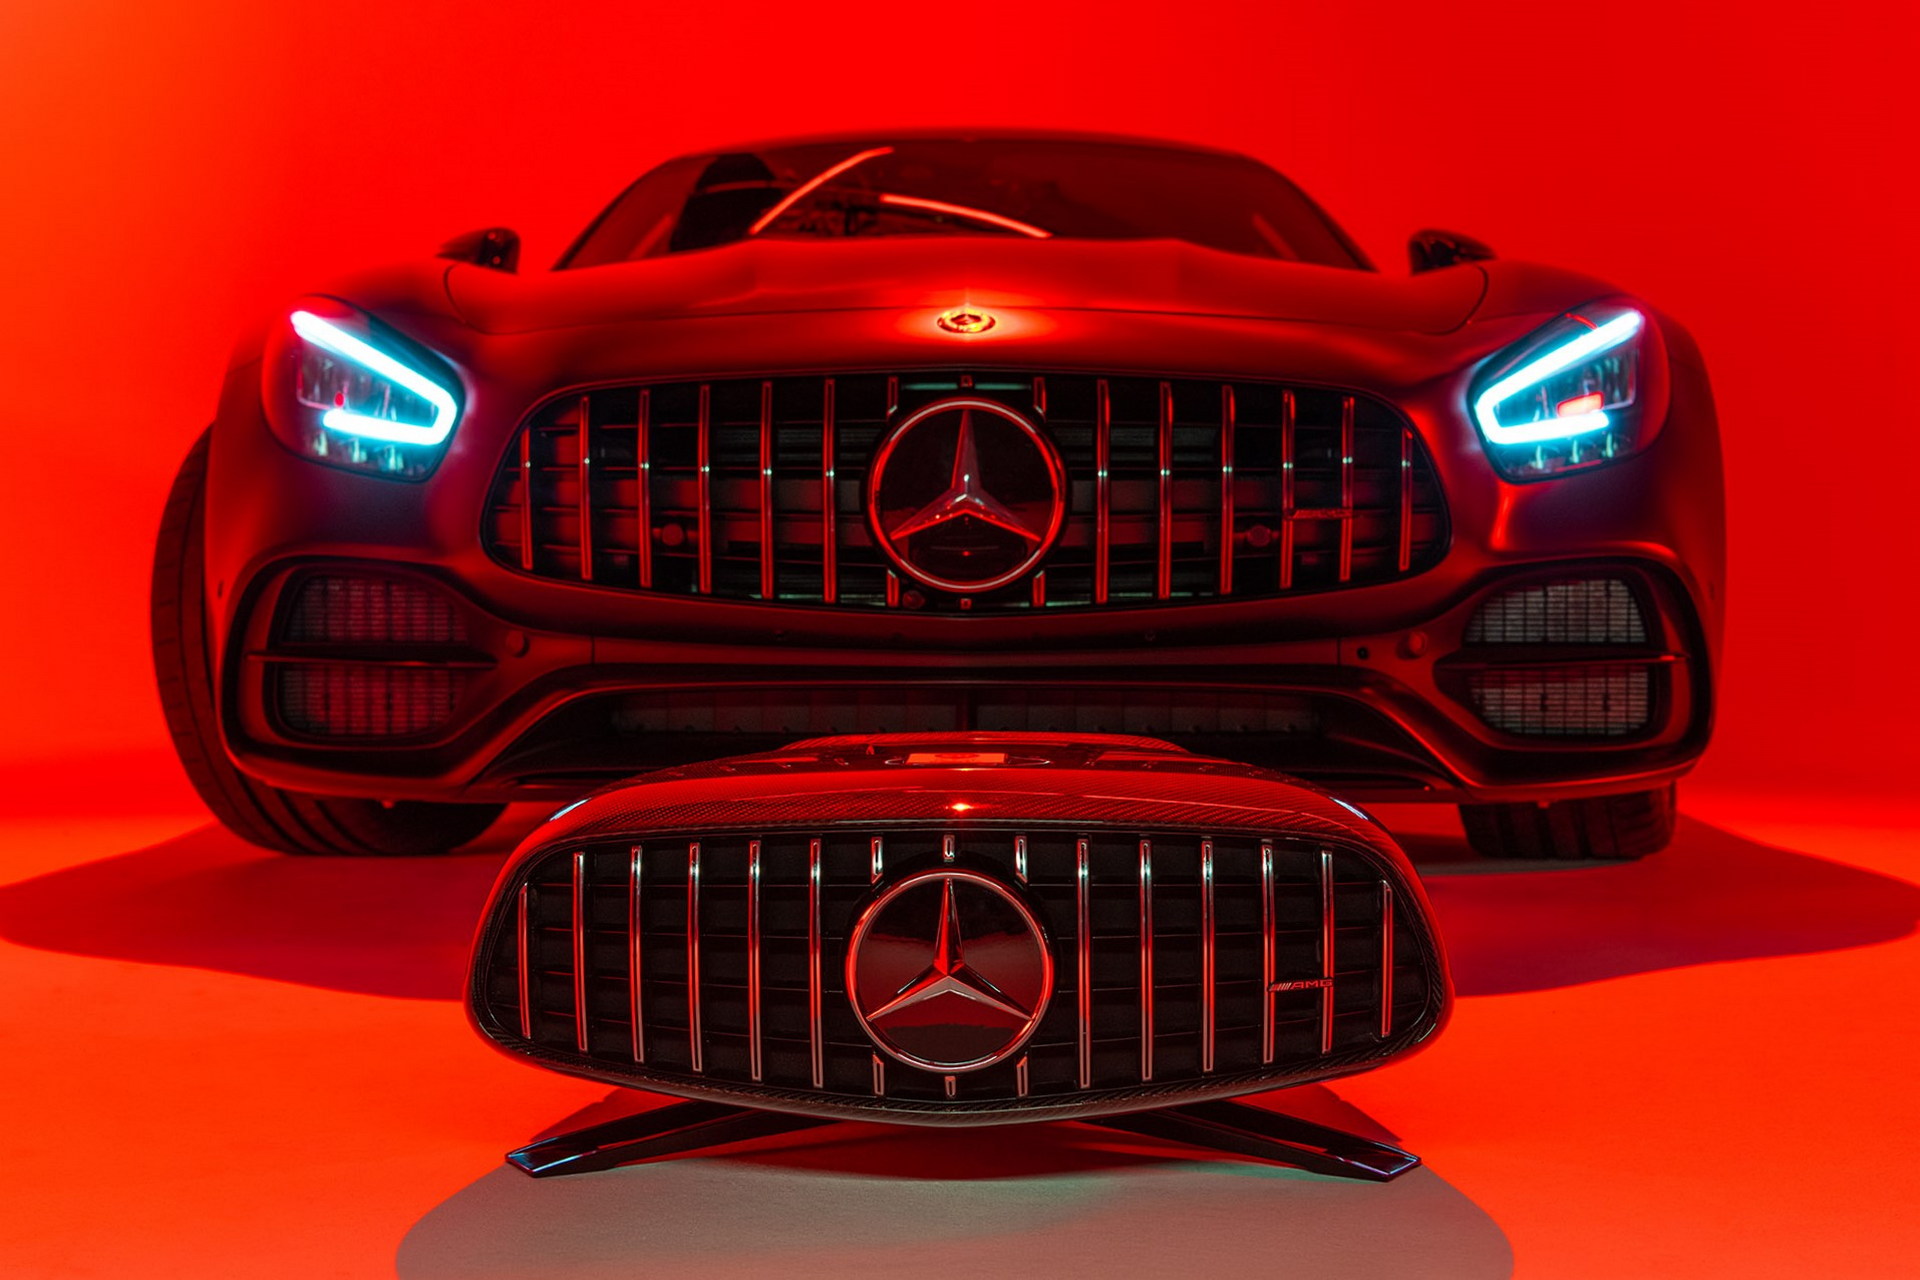 Mercedes-AMG-speaker-1.jpg